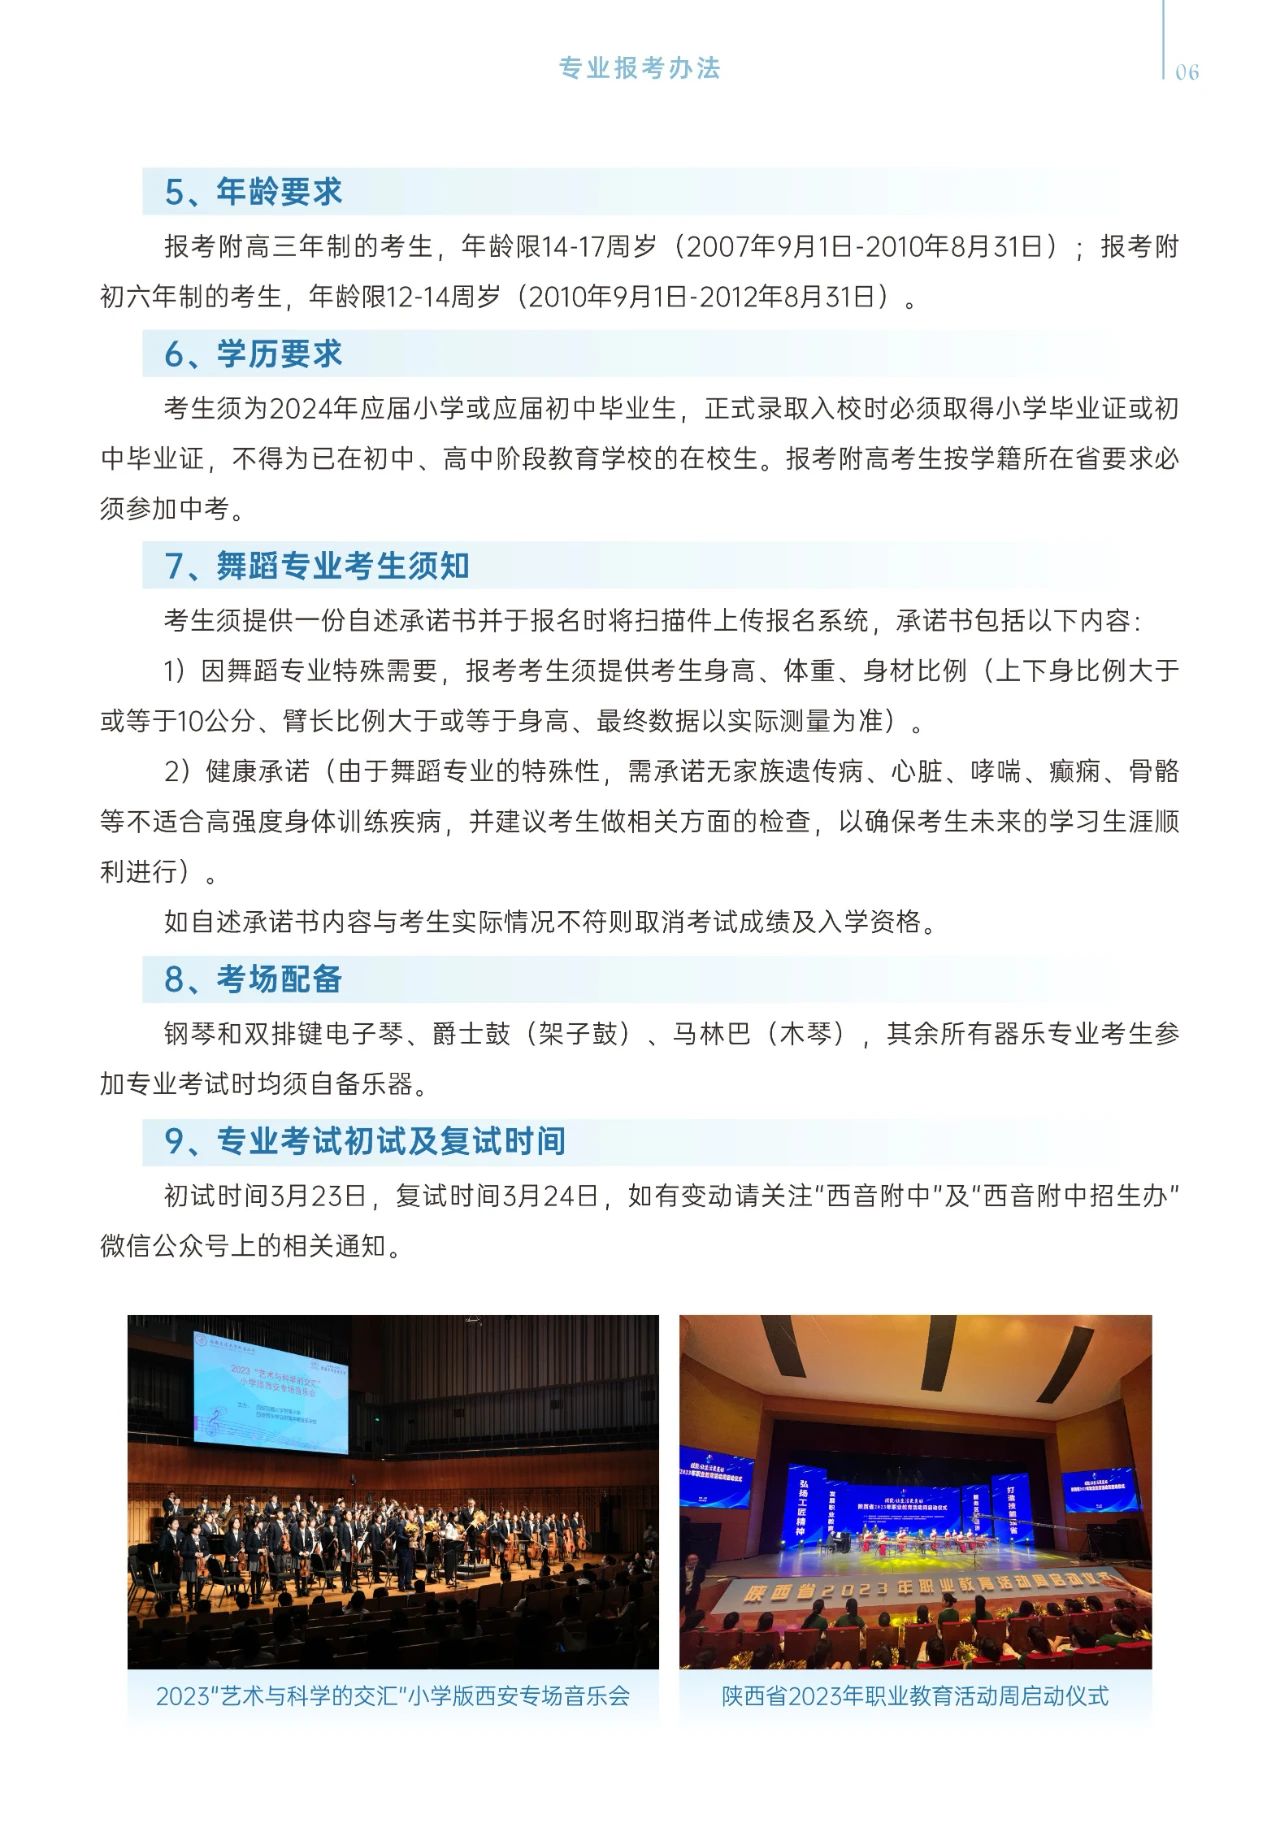 2024年西安音乐学院附属中等音乐学校招生简章